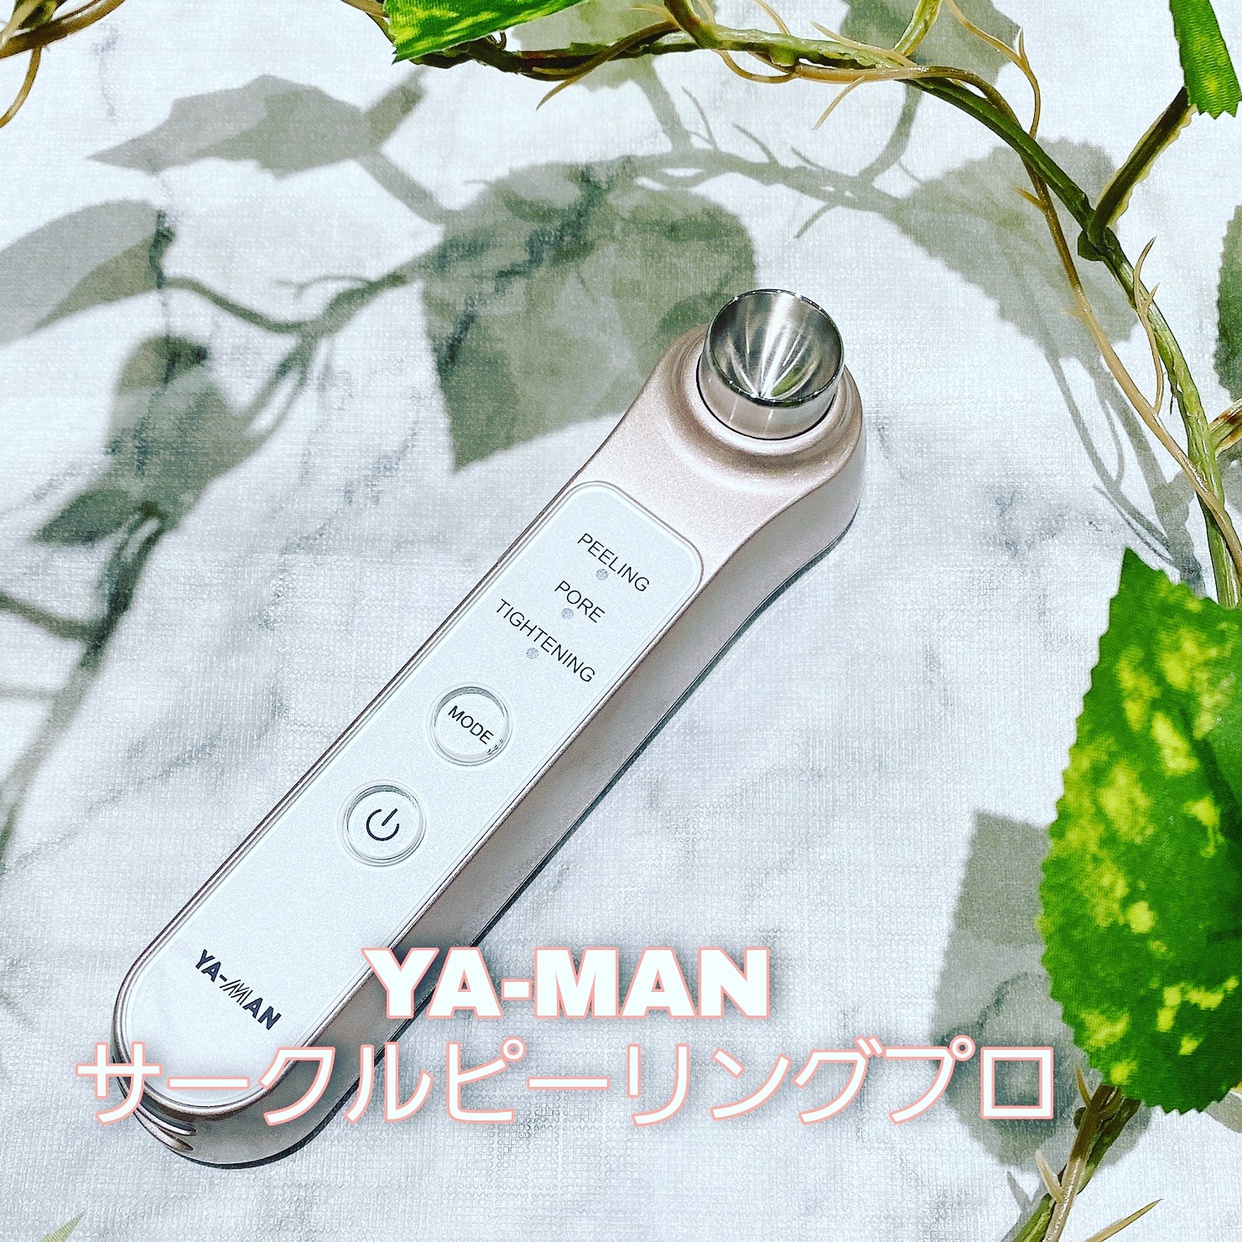 YA-MAN(ヤーマン) サークル ピーリング プロを使ったAyumiさんのクチコミ画像1